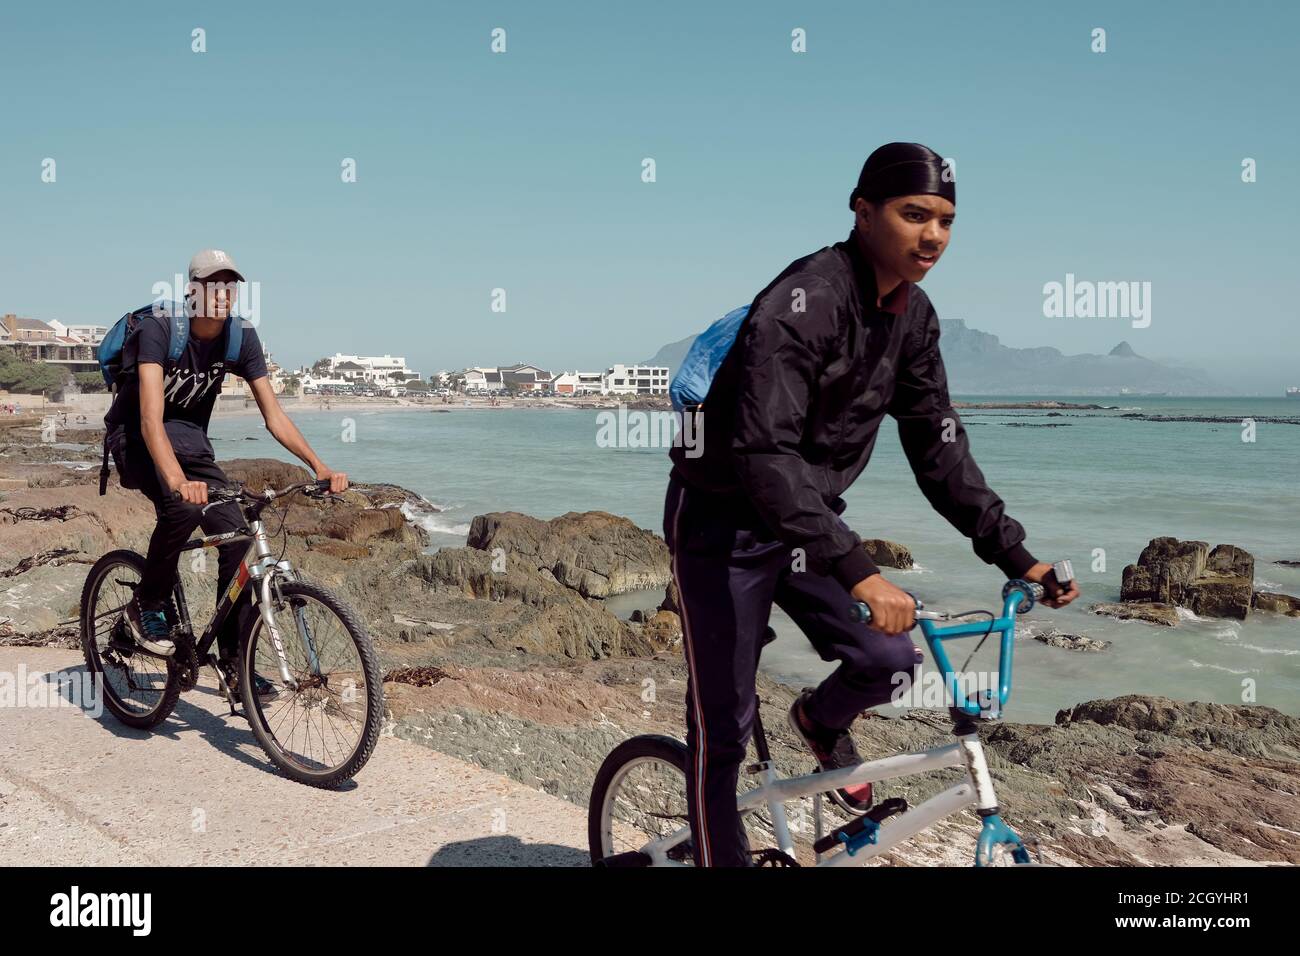 Les jeunes qui voyagent à vélo sur la très populaire plage de Bloubergstrand au Cap, en Afrique du Sud. Montagne de table en arrière-plan. Banque D'Images